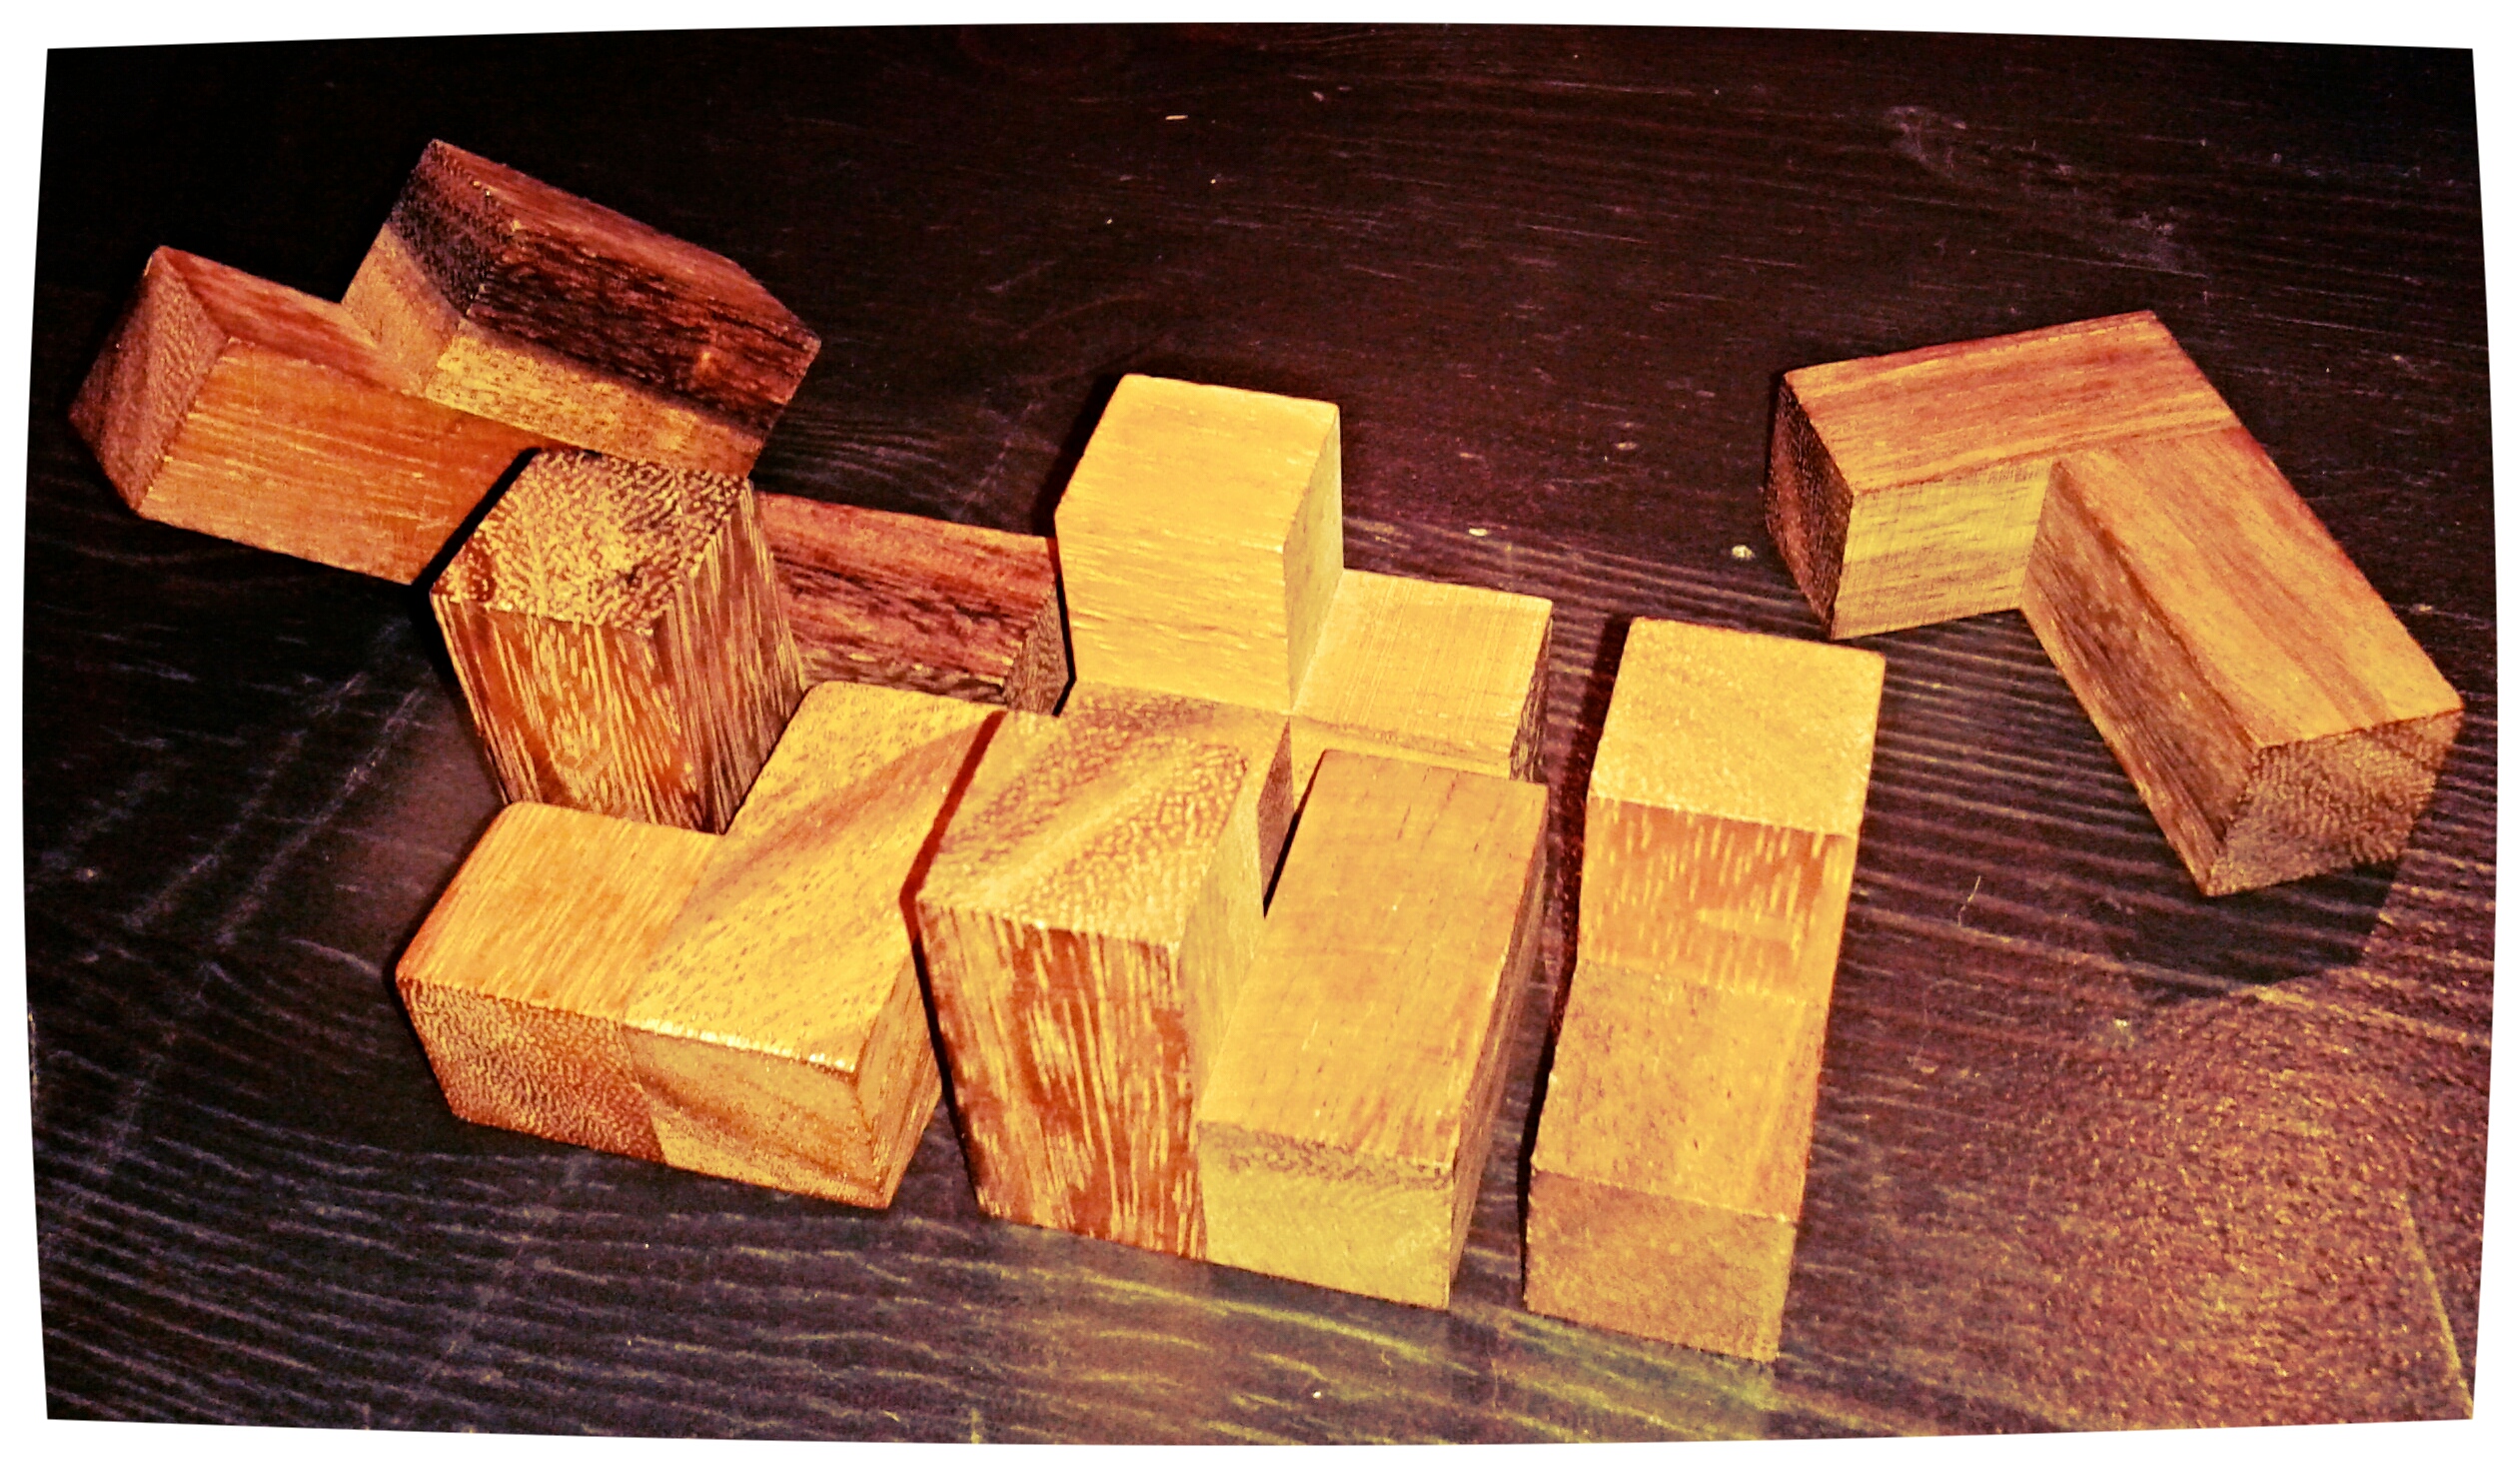 Maqueta de la colocación de las piezas del “cubo soma” en el diseño anterior, realizado con pequeñas piezas de madera del juego